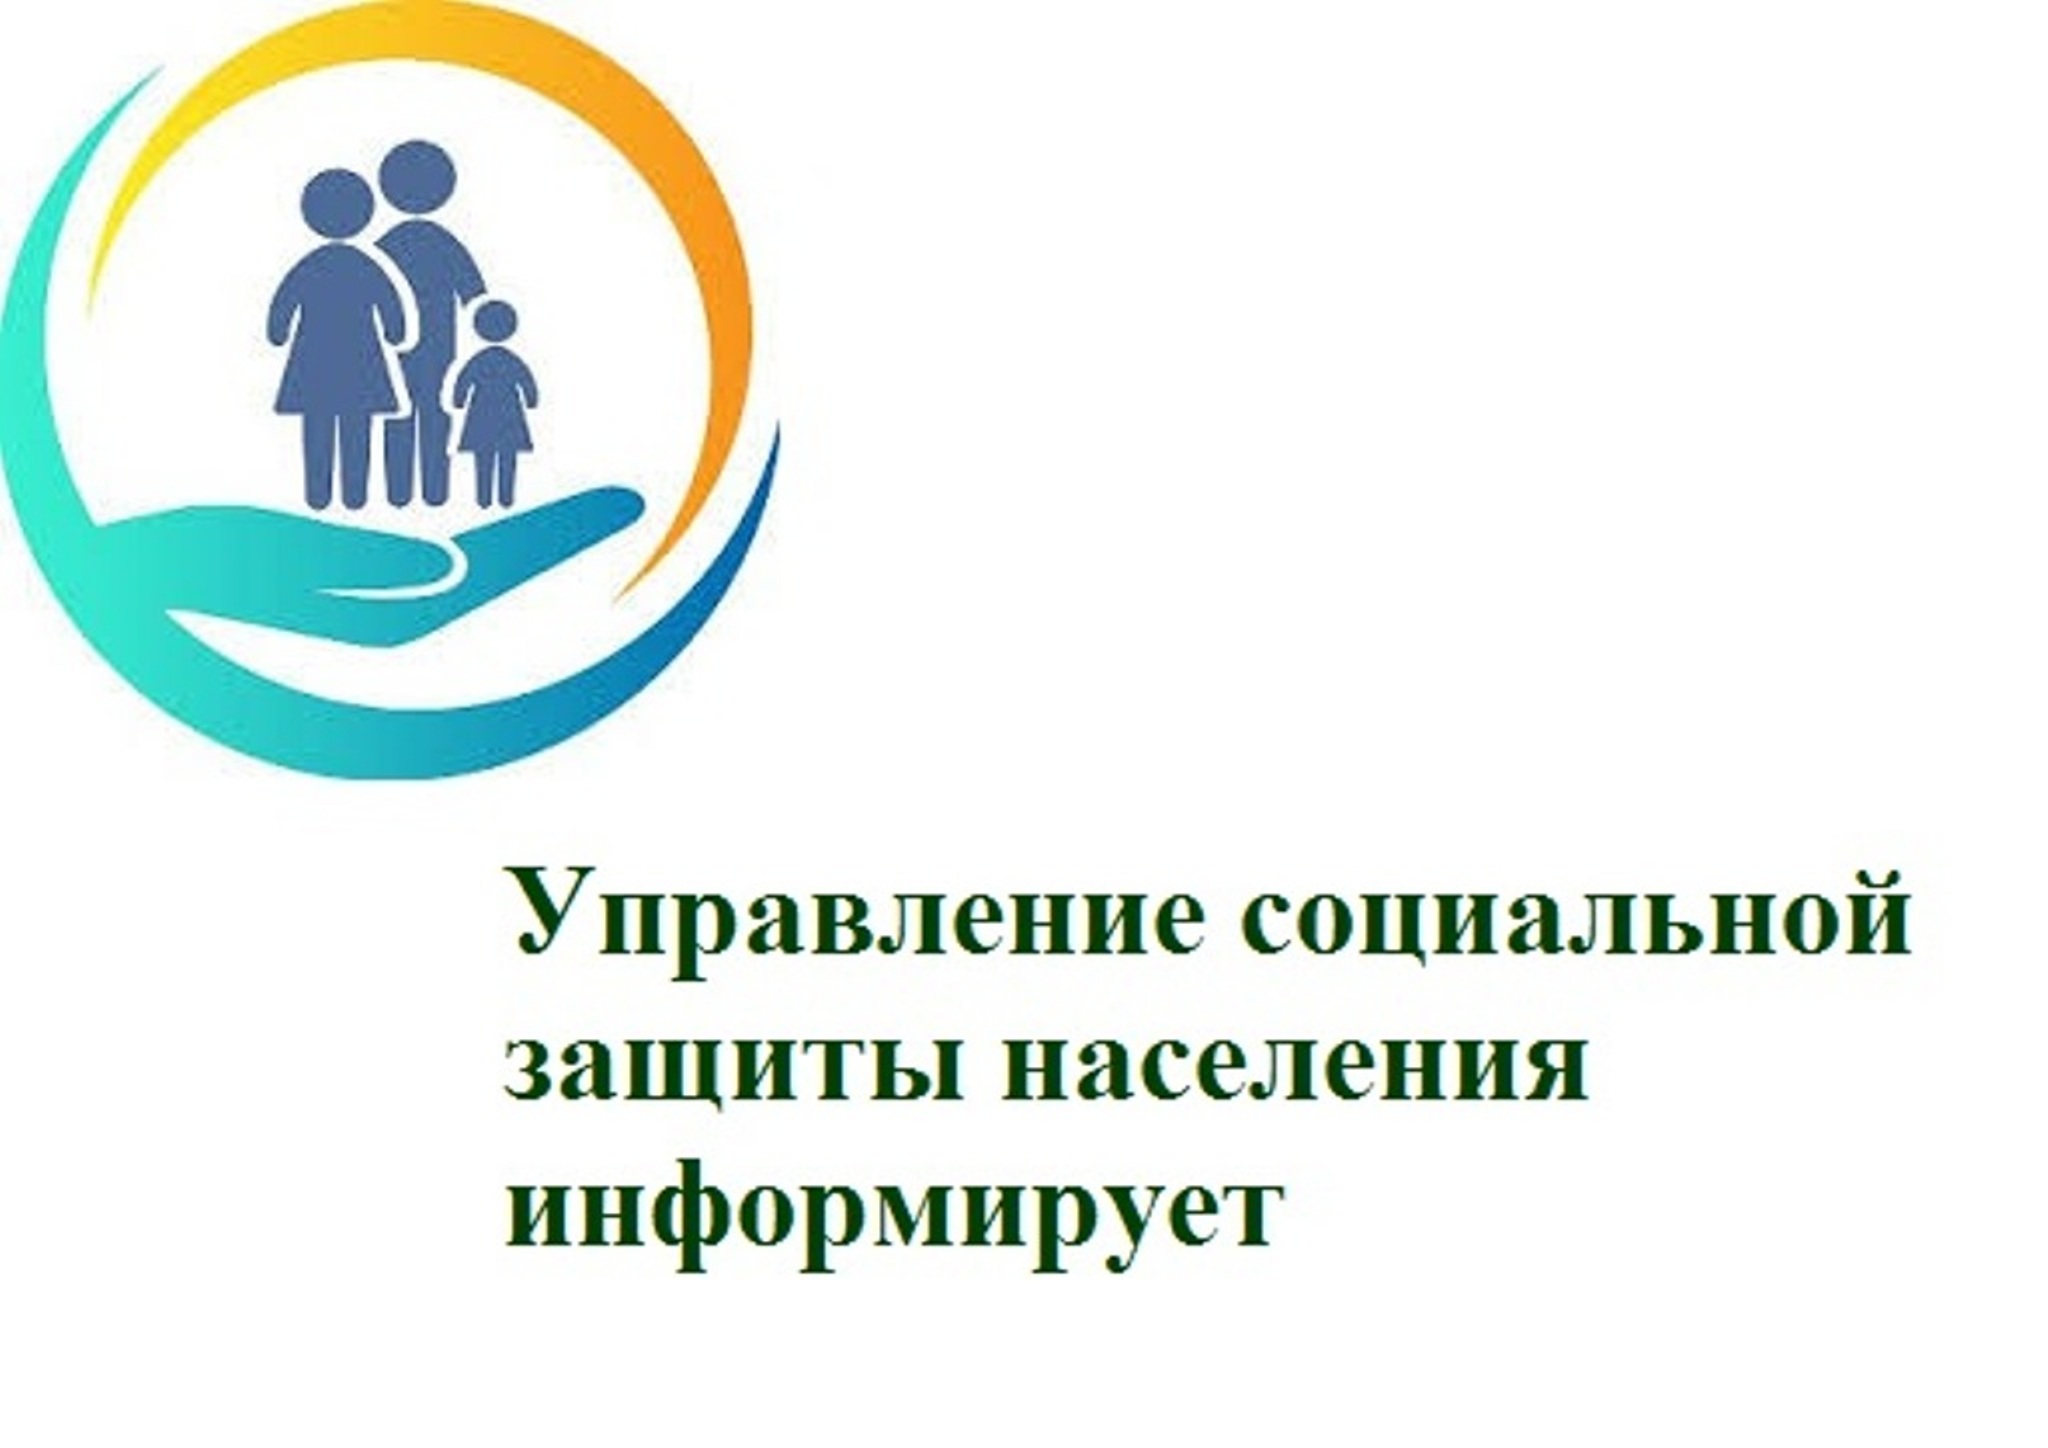 ОГКУ «Управление социальной защиты населения» информирует